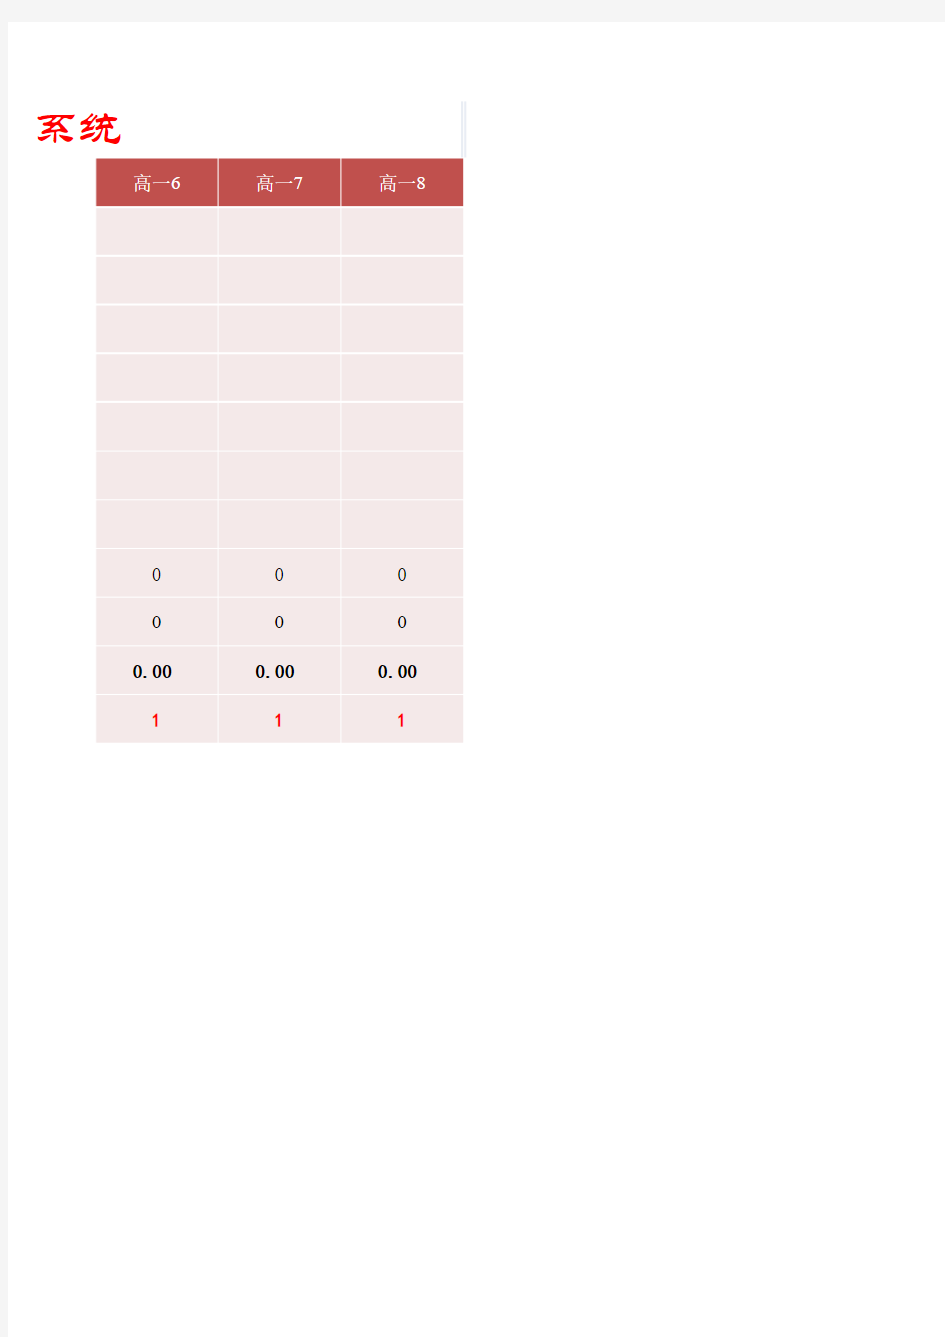 比赛评分记录表Excel模板